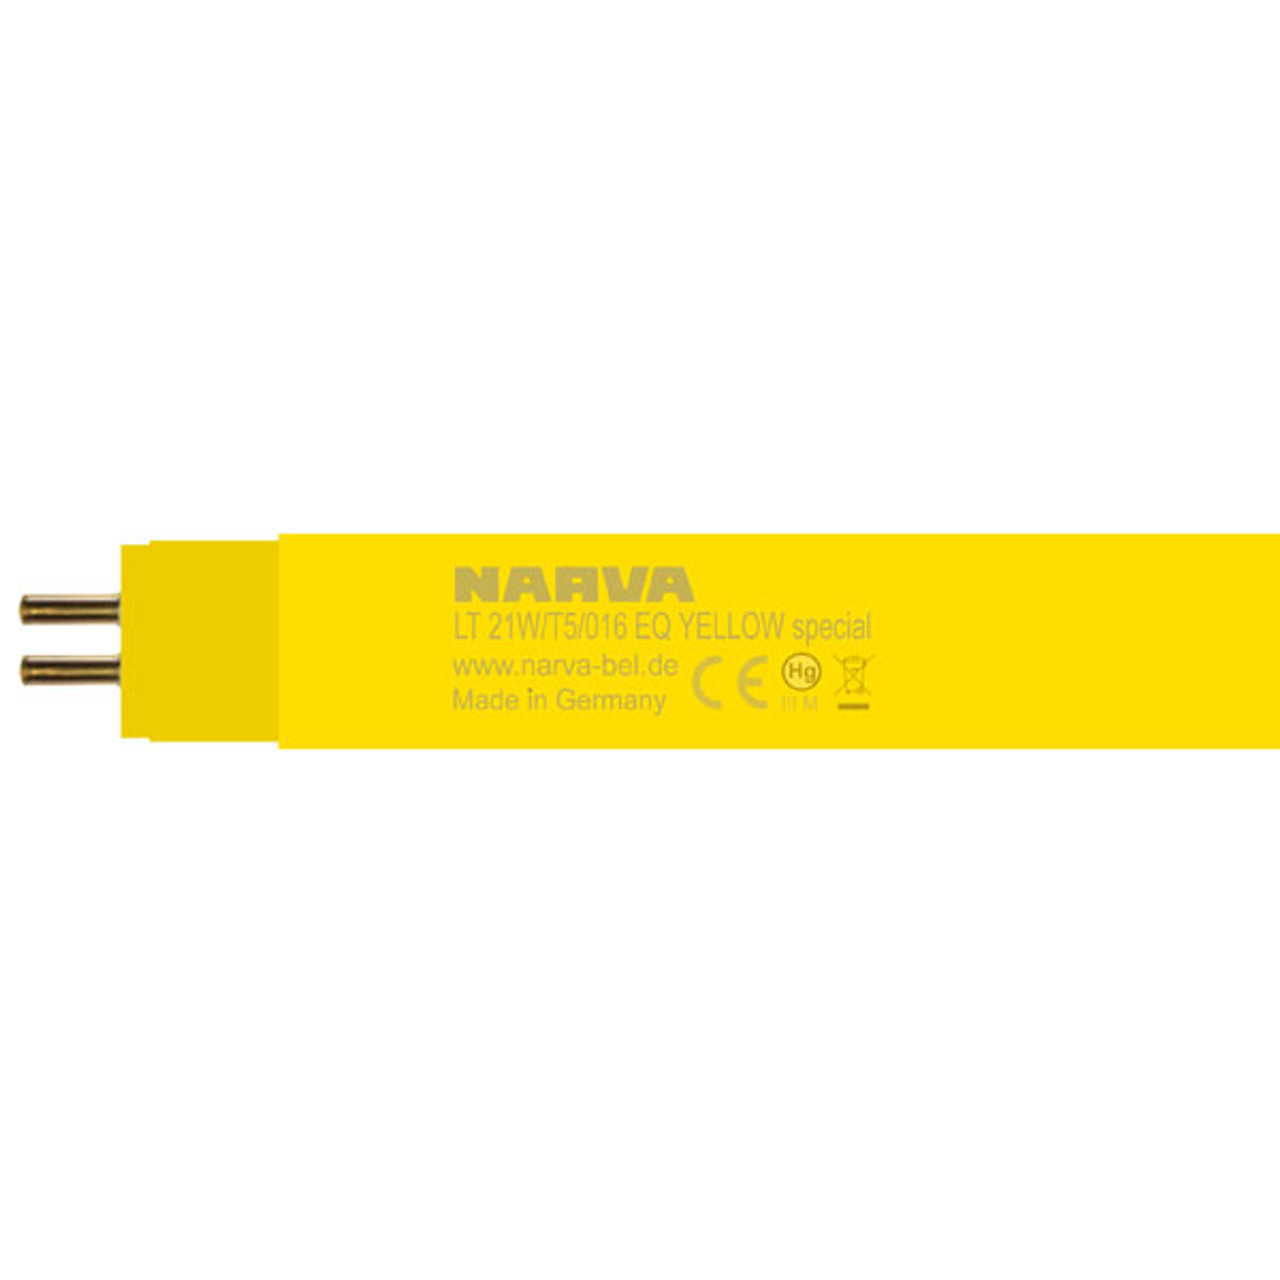 Narva LT 21w T5 EQ/YESP 849MM T5 Yellow